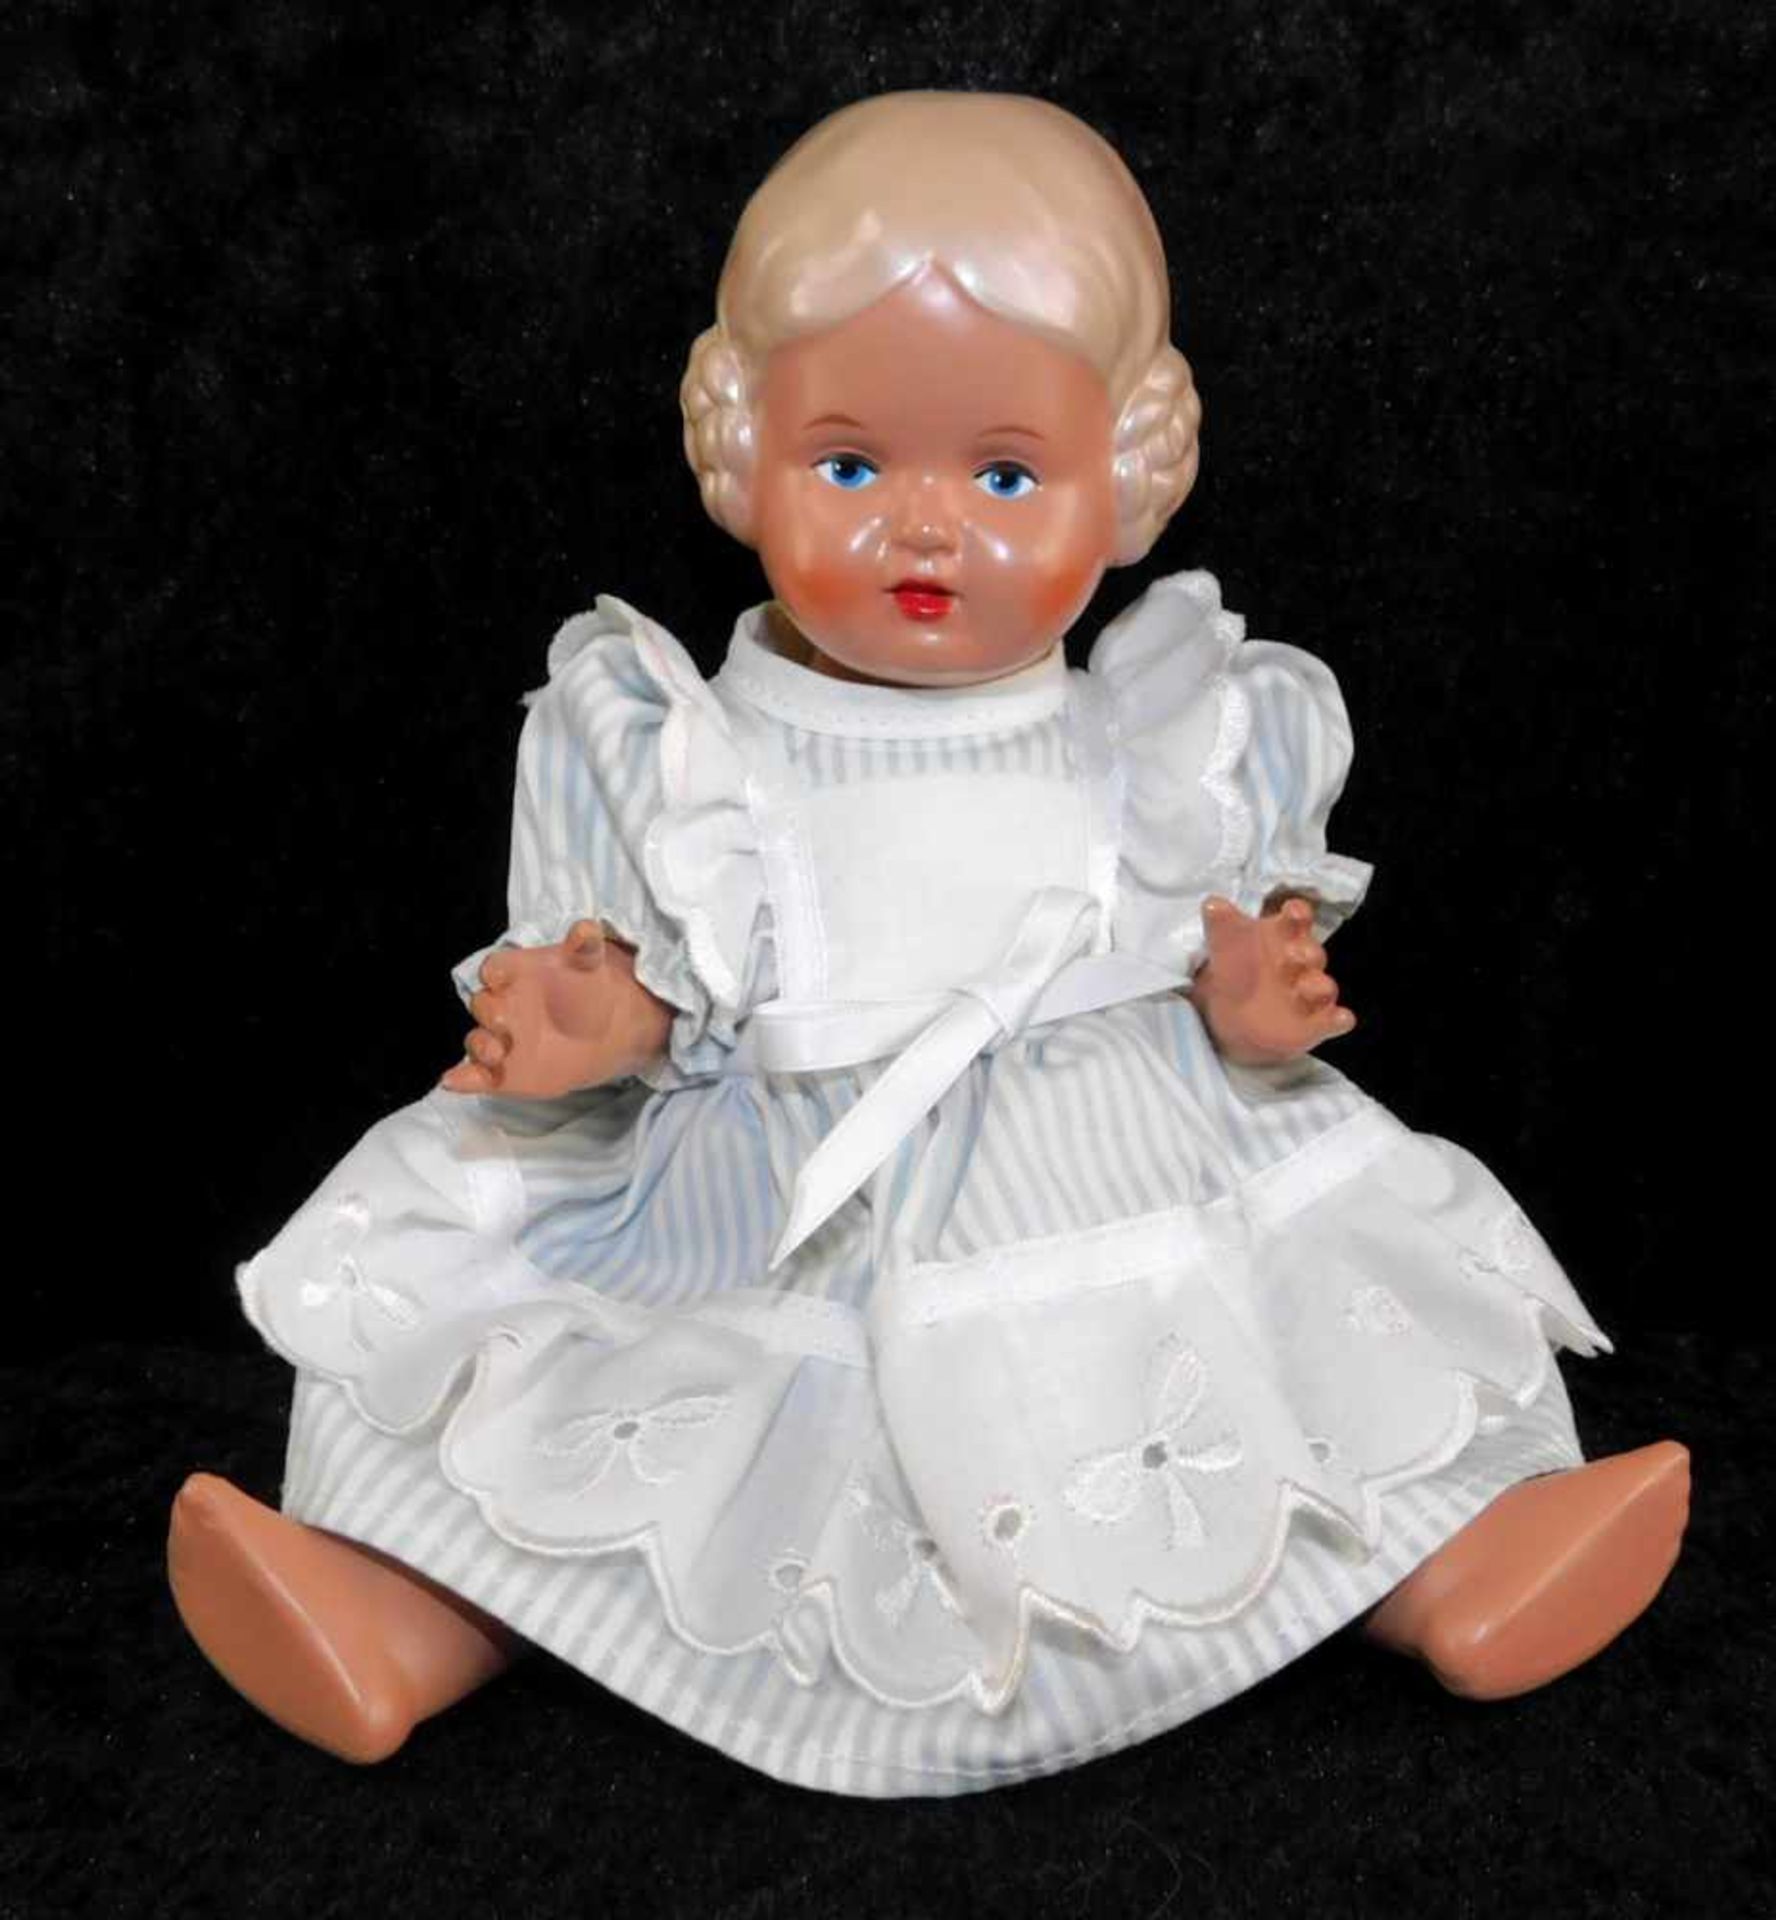 Puppe Schildkröt Nr. 25,Bärbel, 1940-50er Jahre, bewegliche Arme u. Beine, Höhe 24 cm, guter